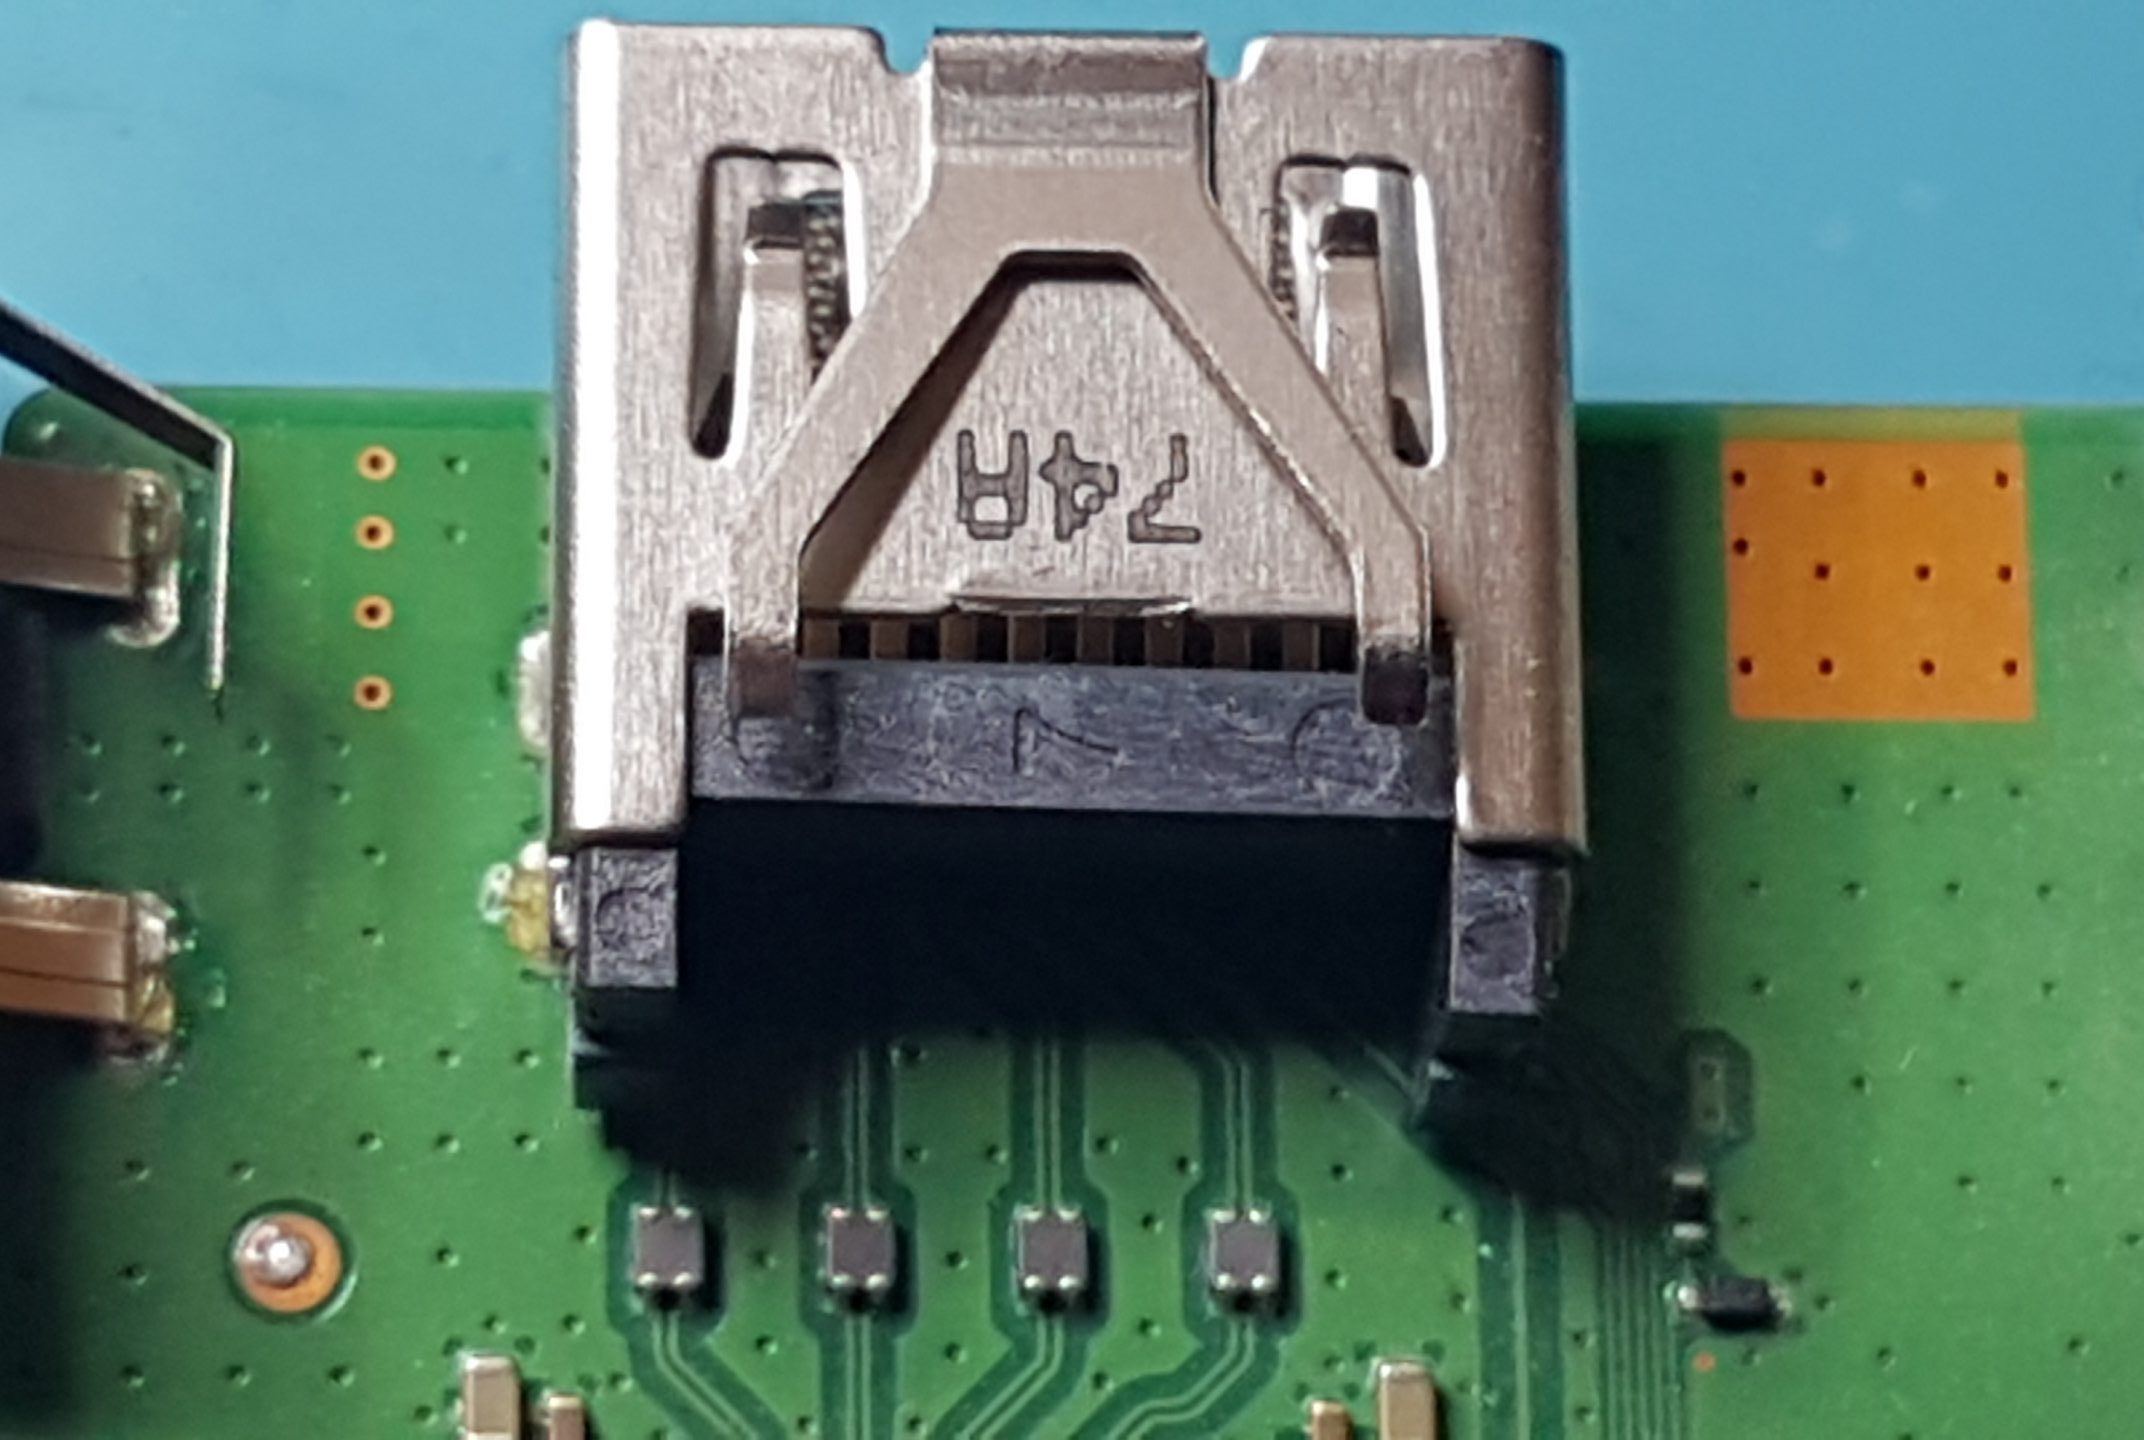 Remplacement Connecteur HDMI pour PS4 Slim/Pro